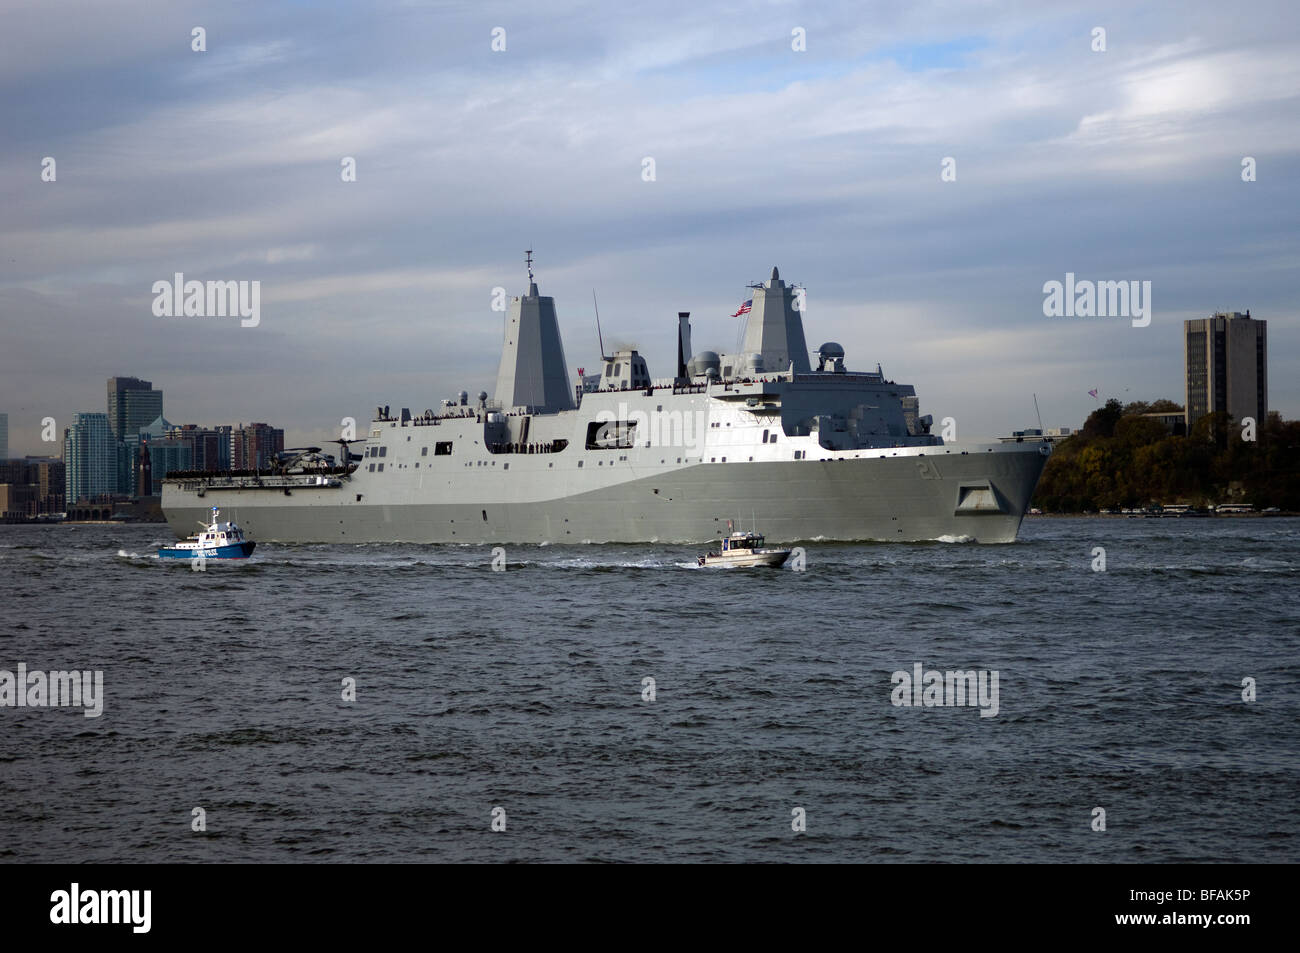 Die amphibious Transport Dock, die USS New York LPD-21 reist auf dem Hudson River bei Ihrer Ankunft in New York Stockfoto